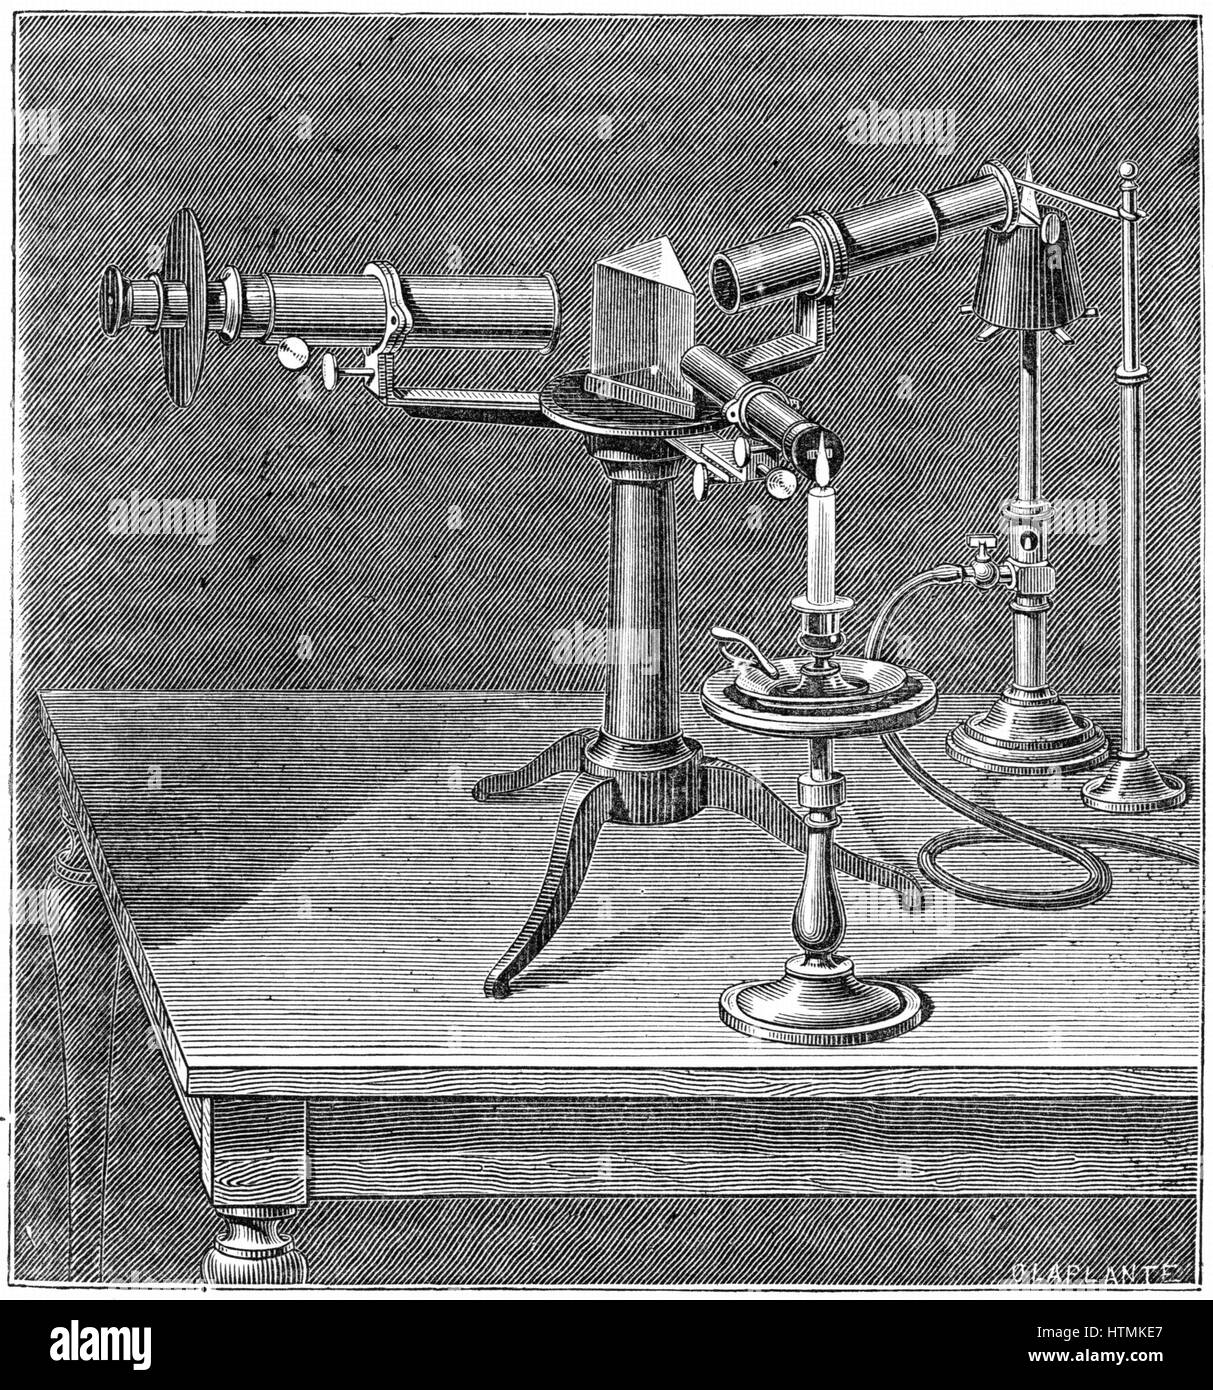 Spektroskop des Typs Robert Wilhelm Bunsen (1811-1899) und Gustav Robert Kirchhoff (1824-1887) verwendet. Spektralanalyse (1859), die Entdeckung der Elemente, darunter Cäsium und Rubidium entdeckt. Gravur c.1895 Stockfoto